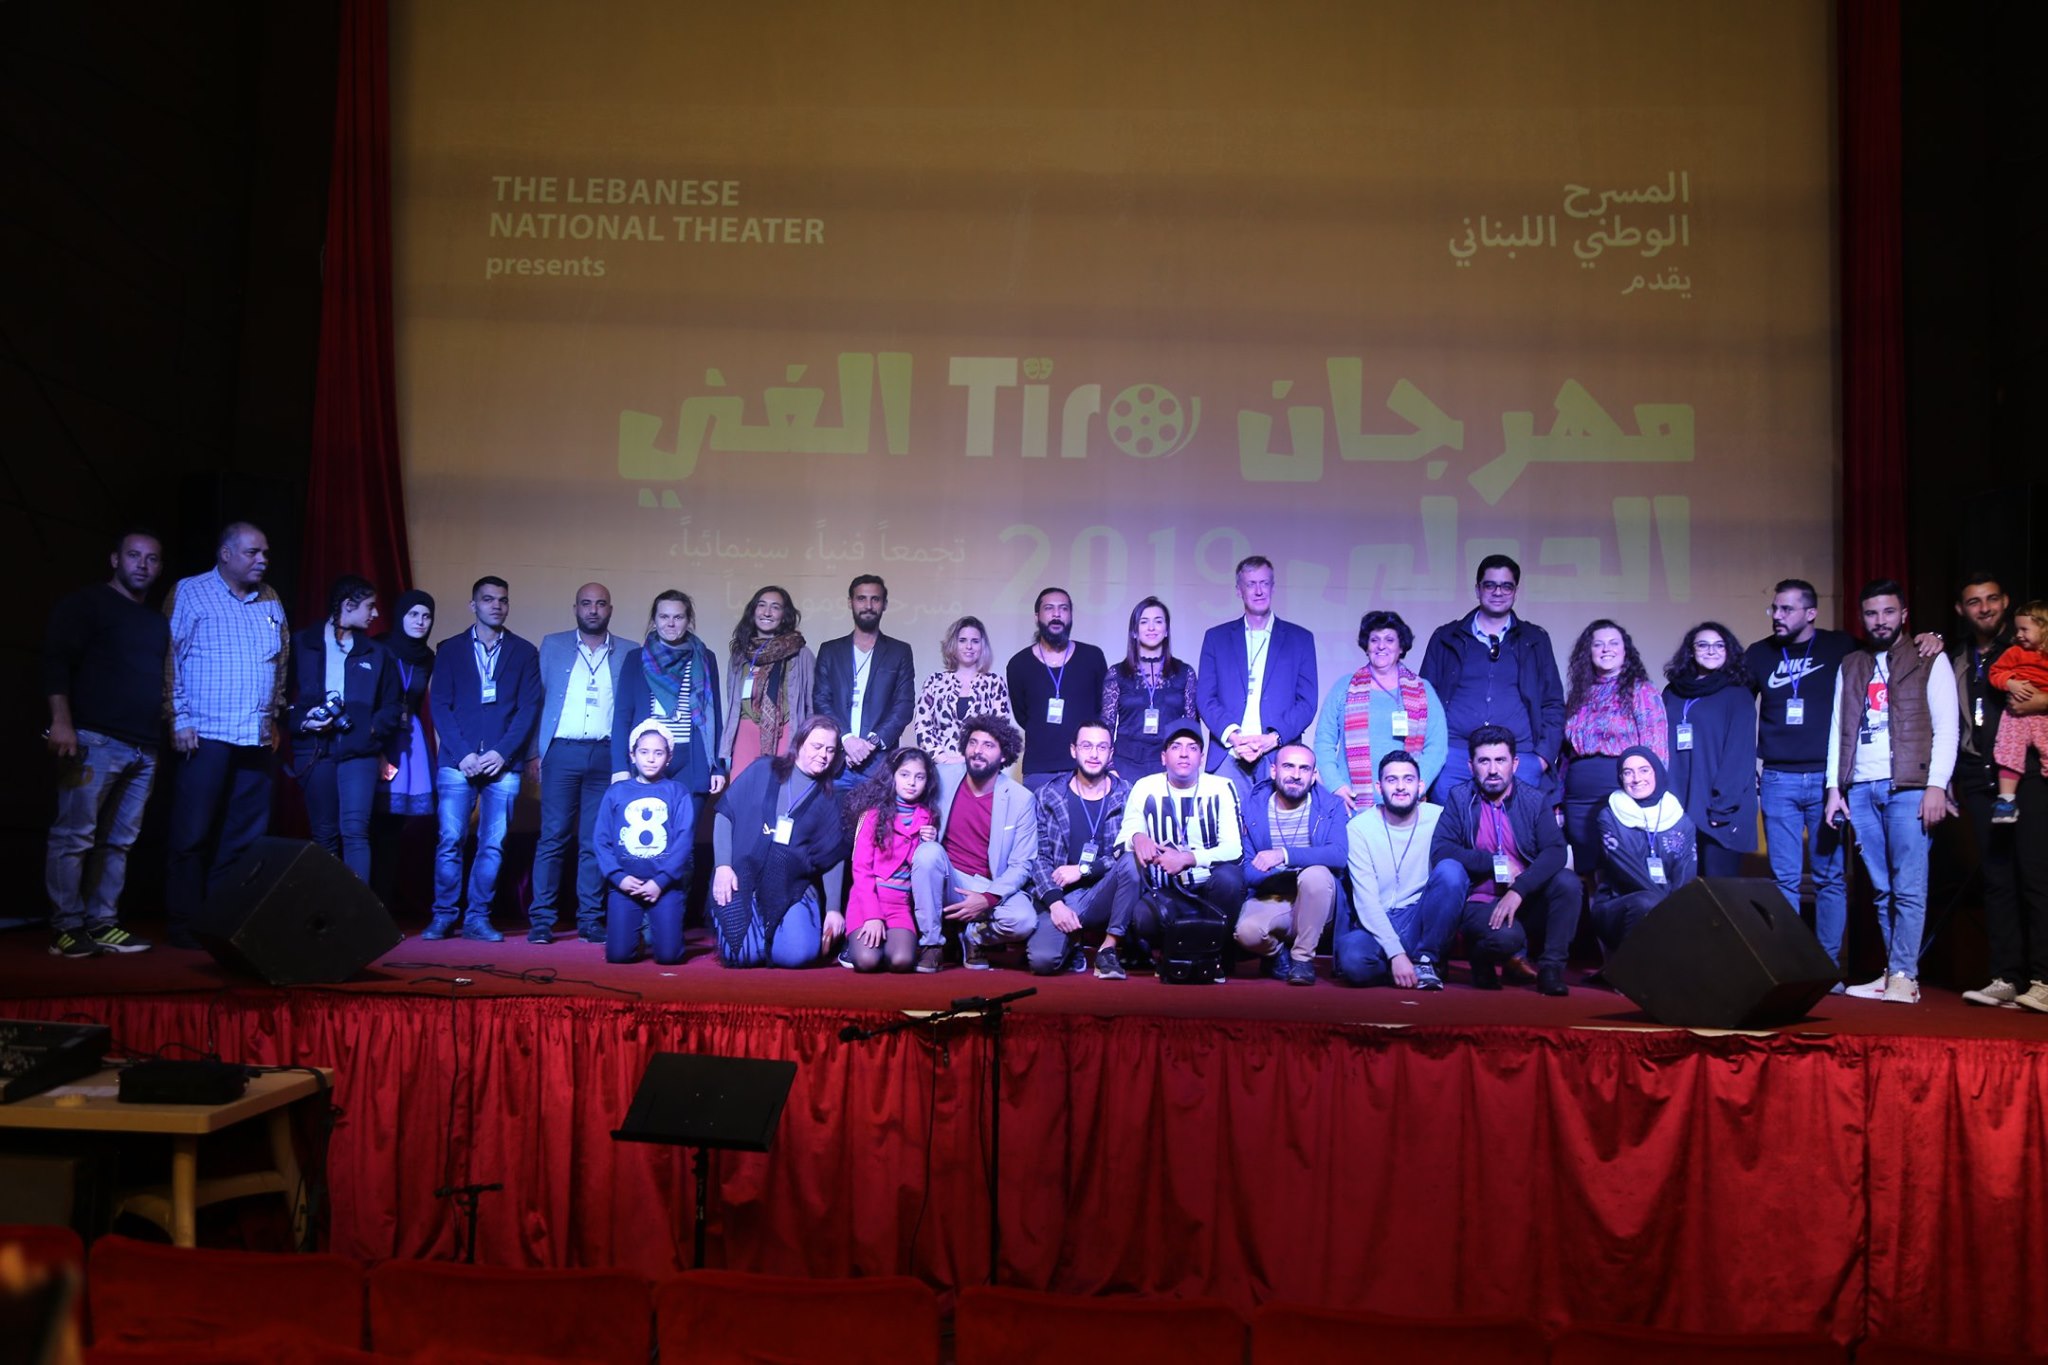 صورة مع المشاركين في المهرجان